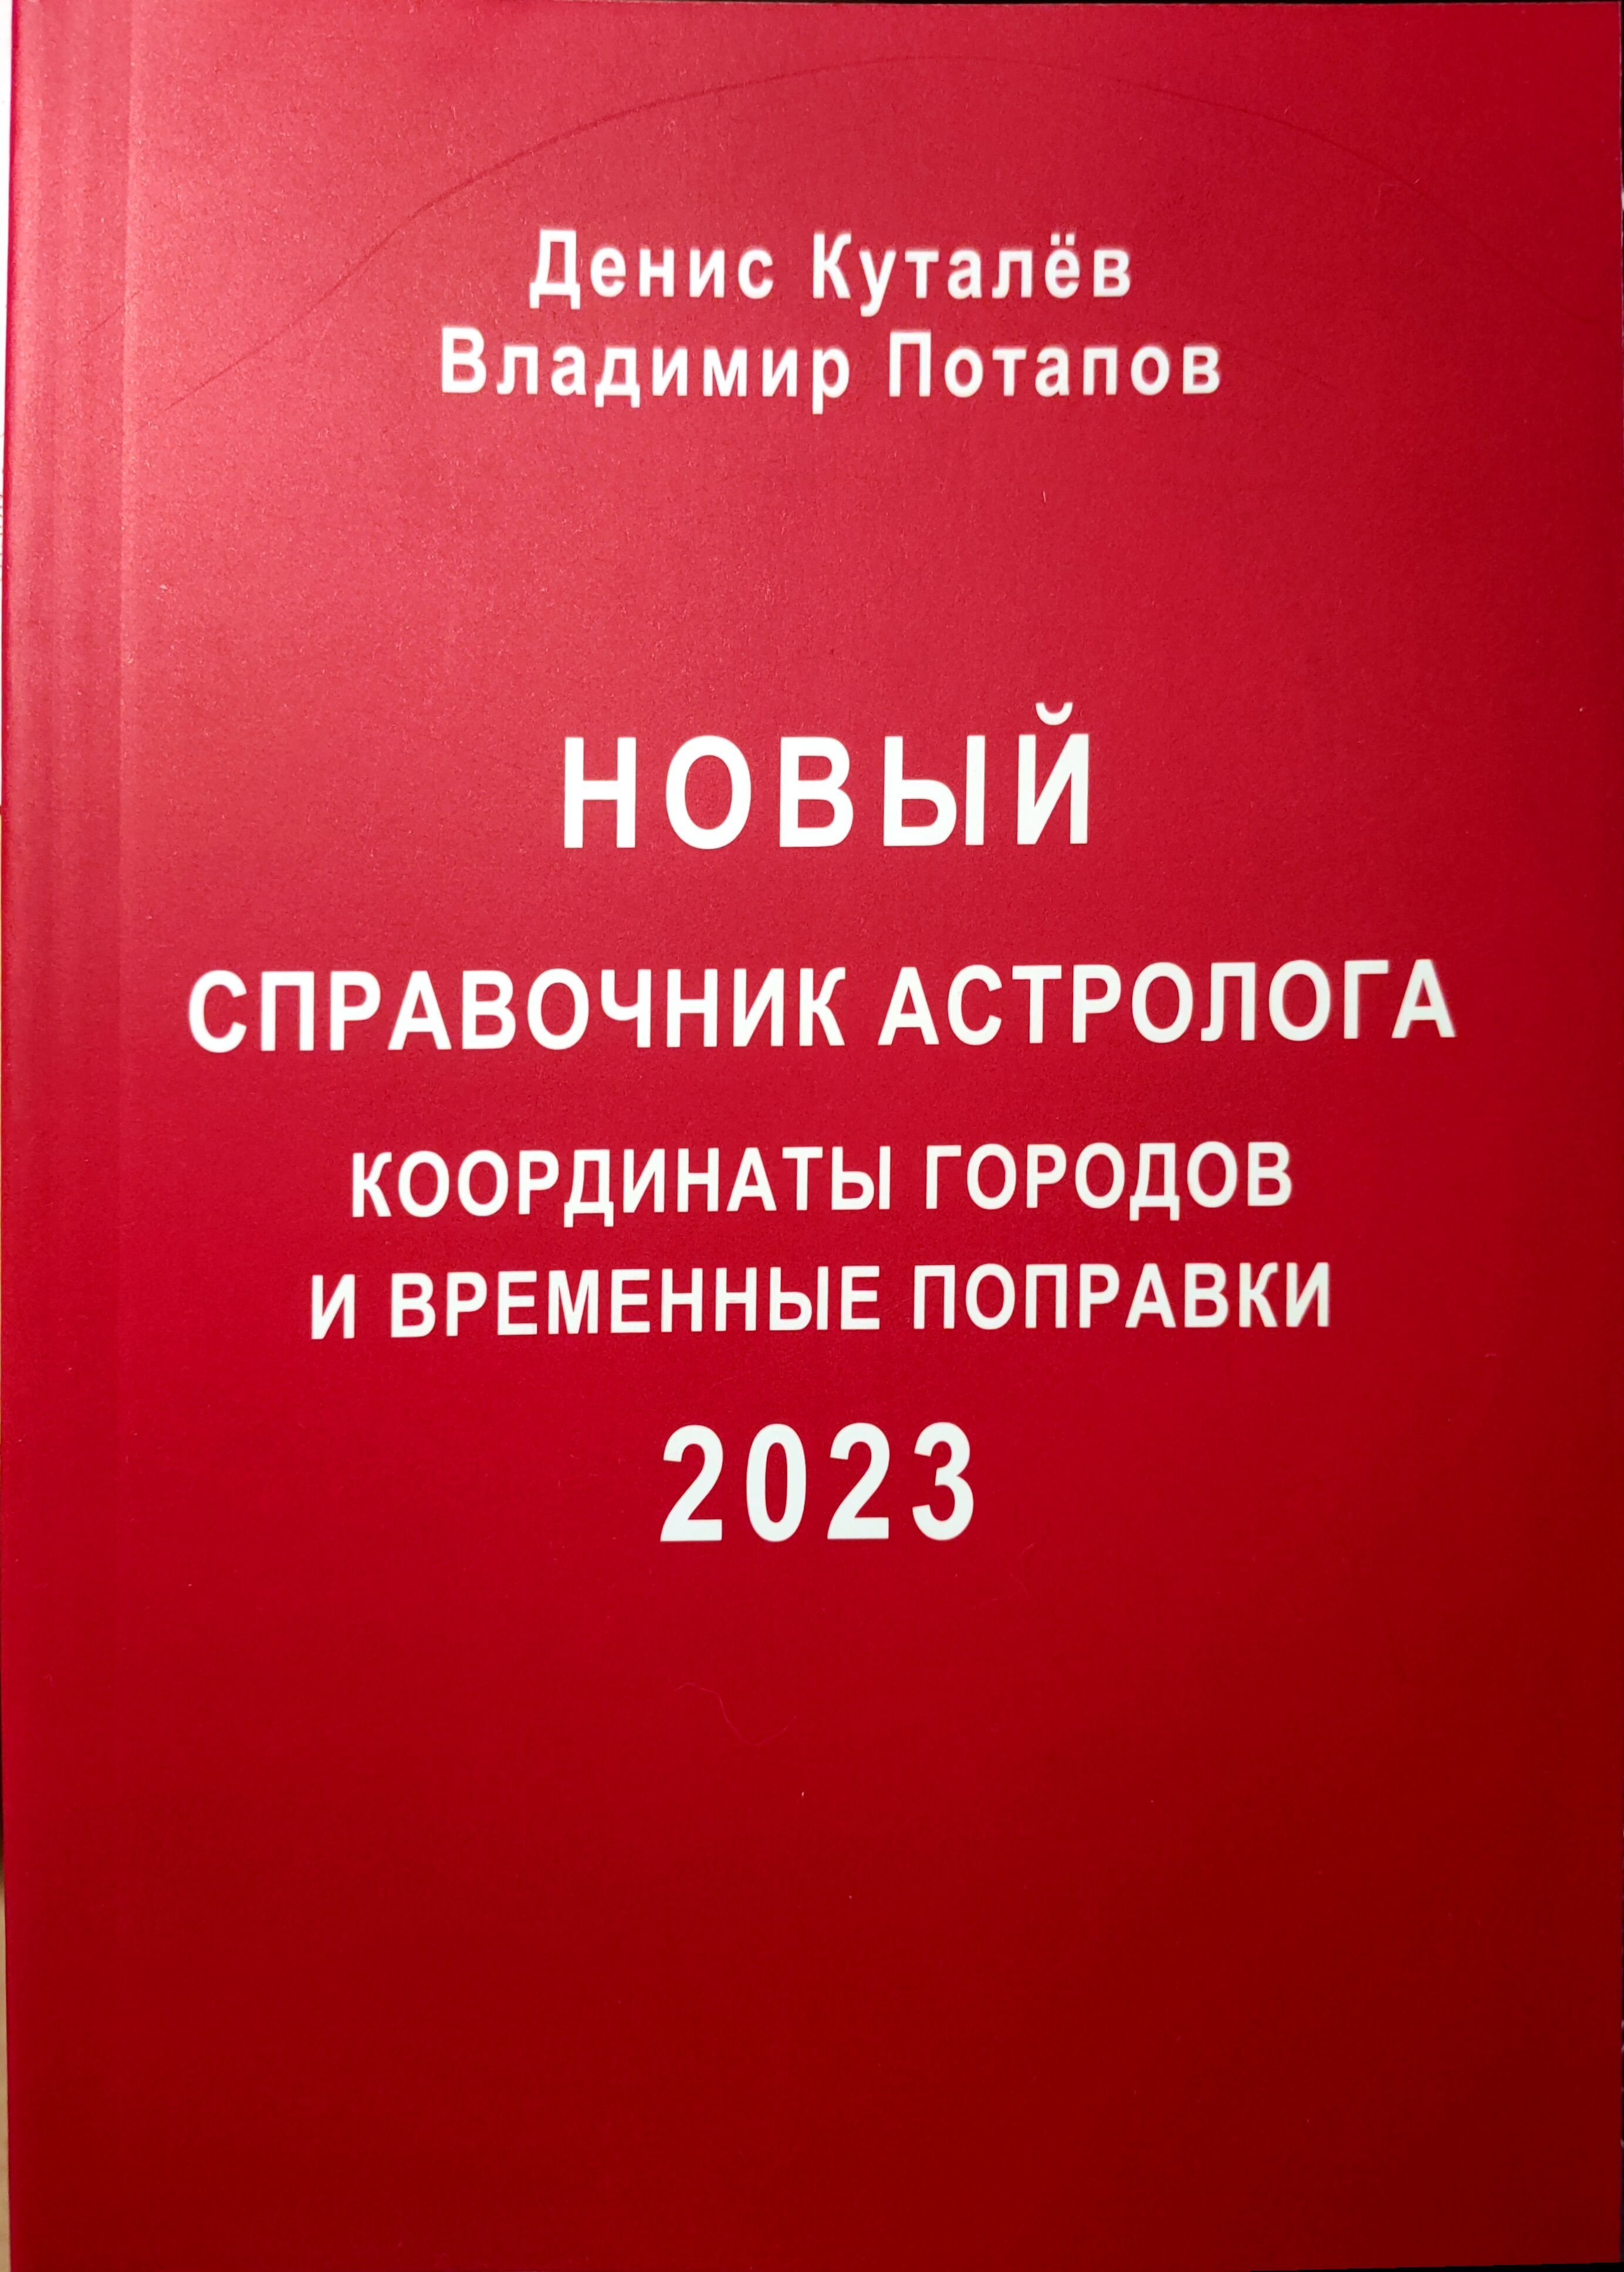 Новый справочник астролога координаты городов и временных поправок. 336 с изменениями на 2023